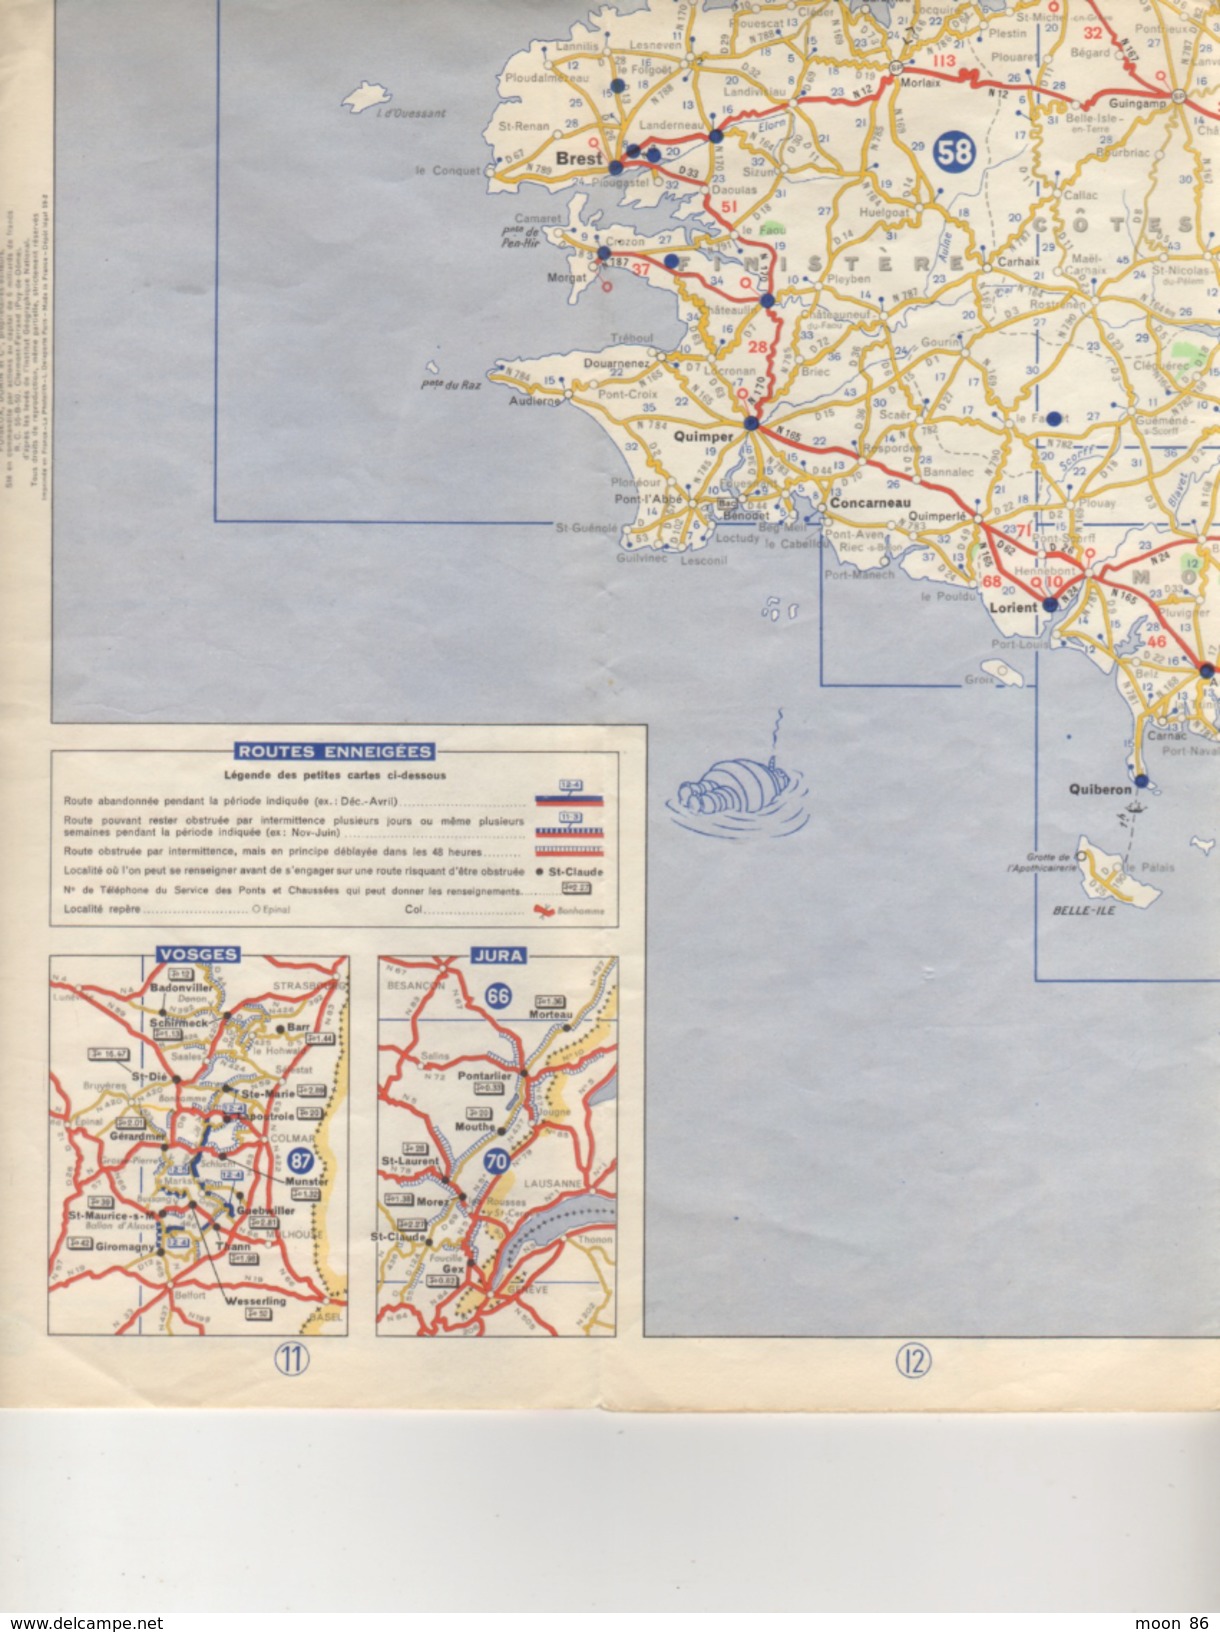 CARTE  MICHELIN 1959  FRANCE NORD  998 - MOBIL GRANDES ROUTES - Cartes Routières